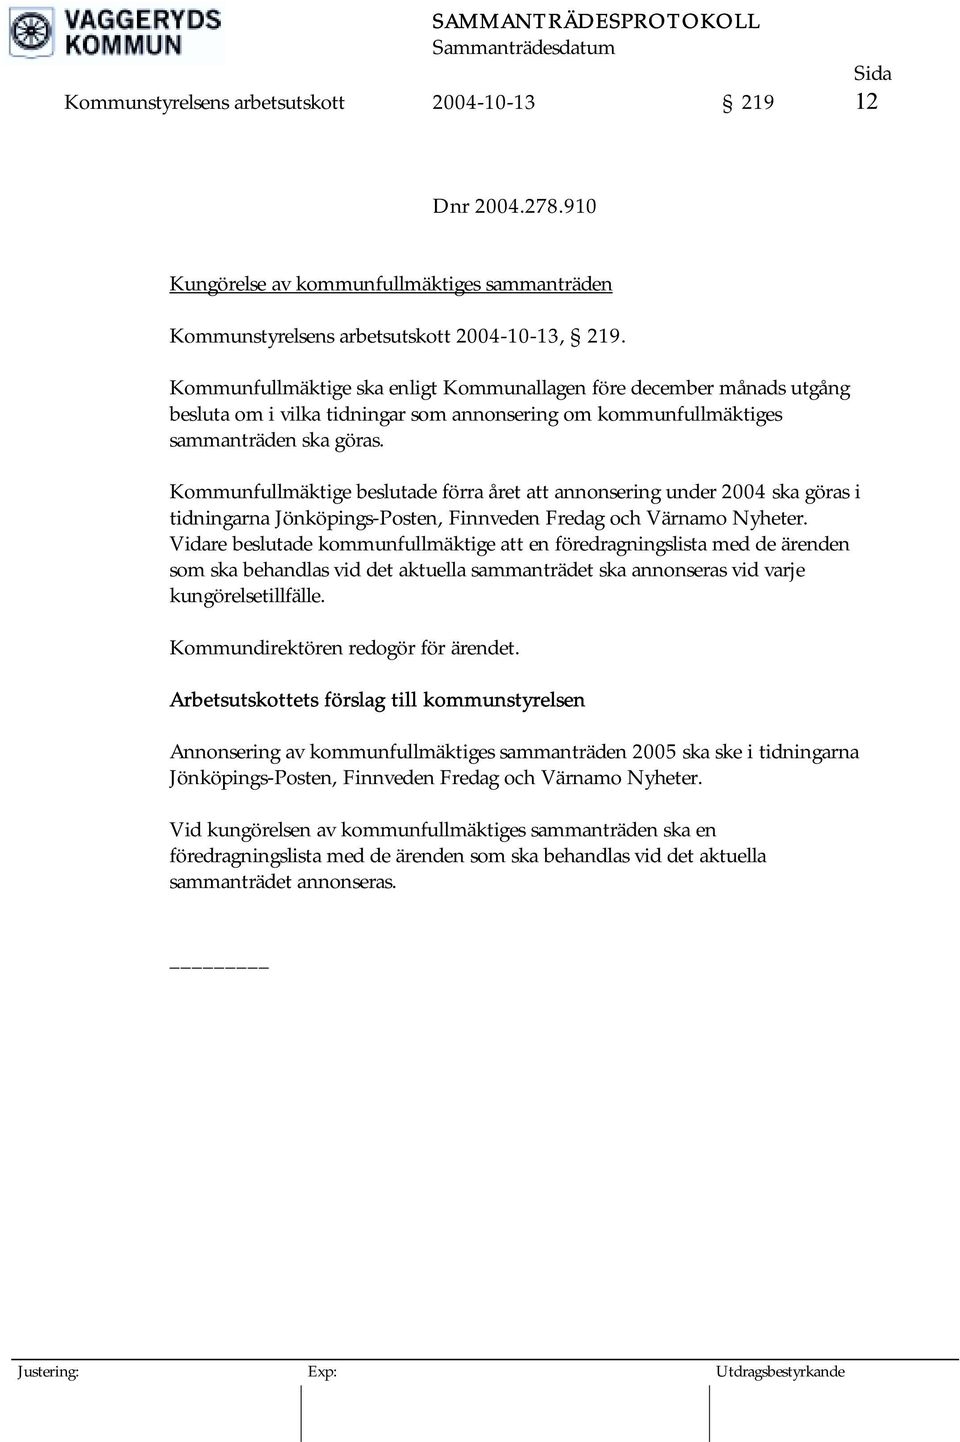 Kommunfullmäktige beslutade förra året att annonsering under 2004 ska göras i tidningarna Jönköpings-Posten, Finnveden Fredag och Värnamo Nyheter.